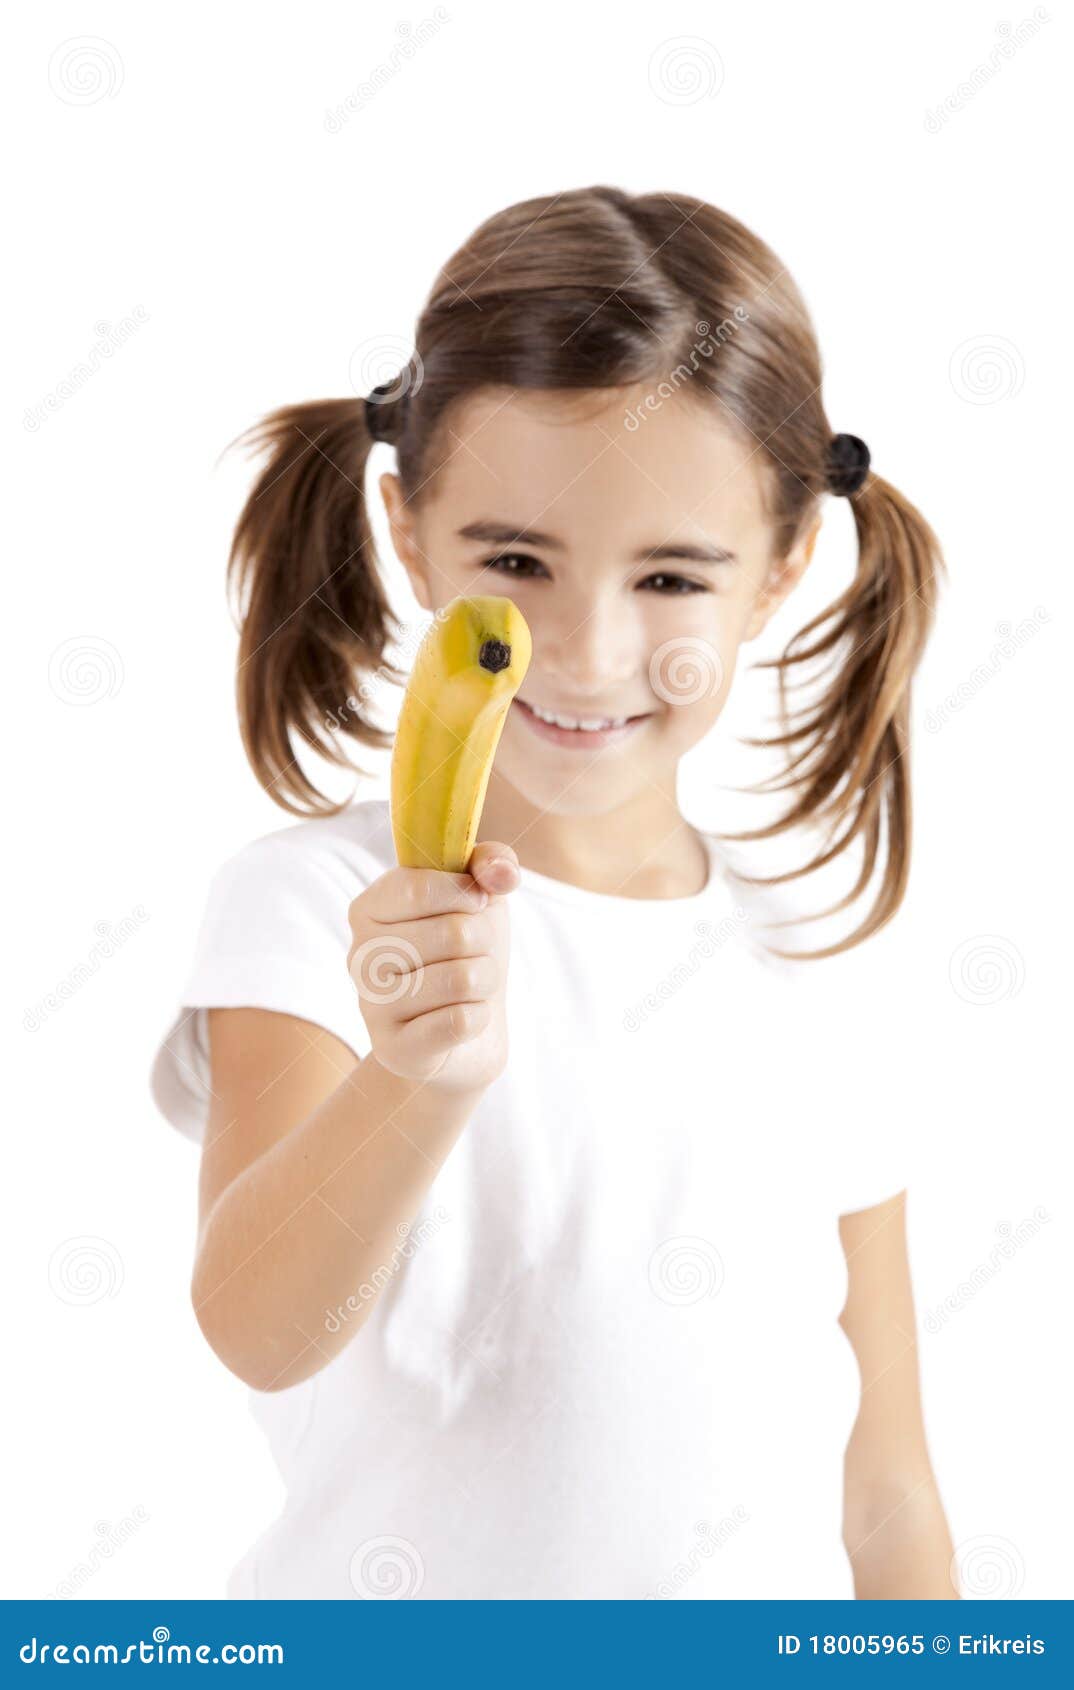 girl shoot with a banana